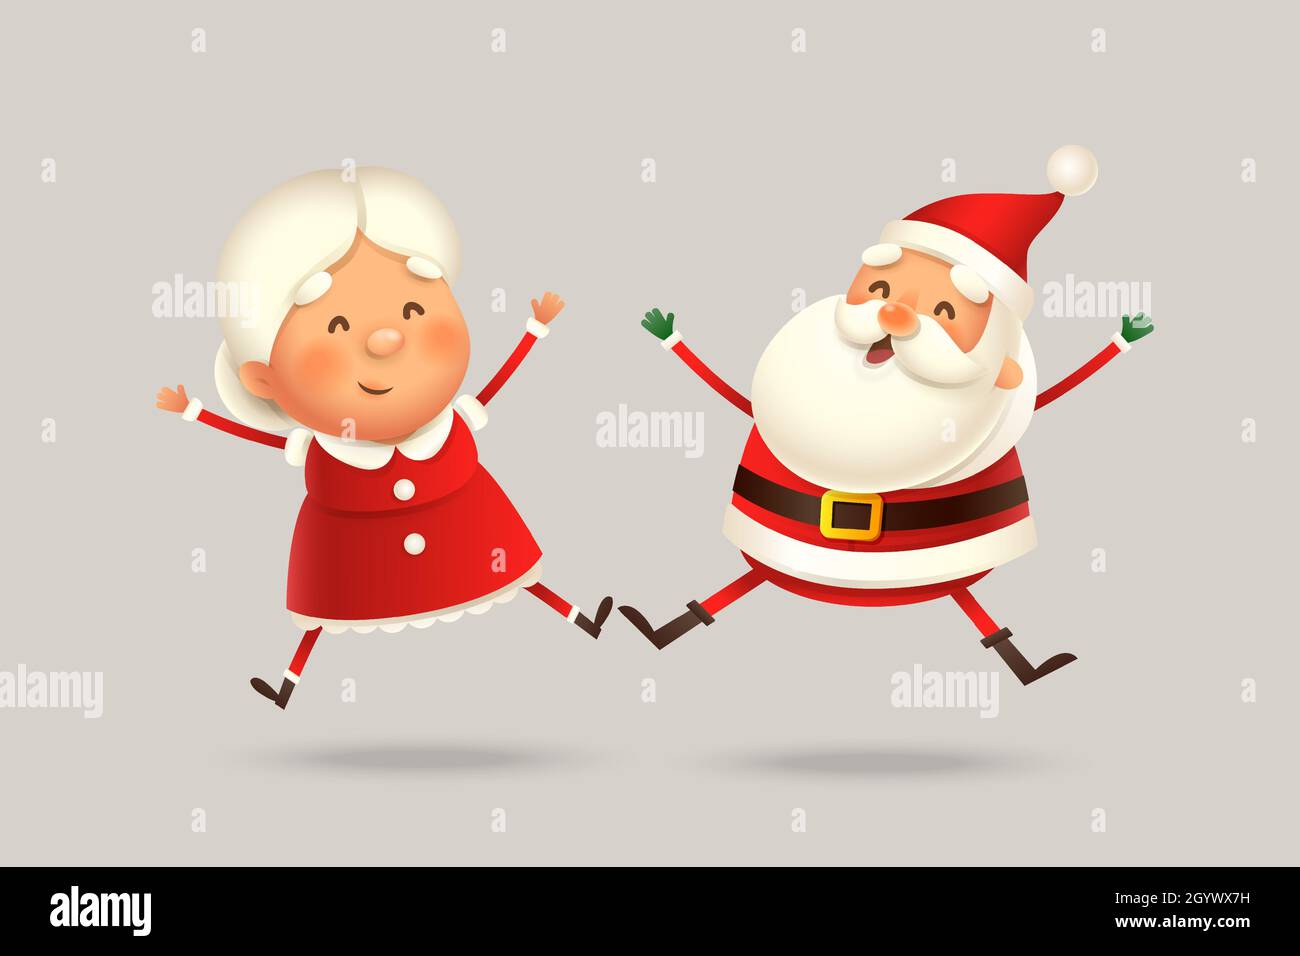 Mme Claus et le saut du Père Noël - expression heureuse - illustration vectorielle mignonne isolée Illustration de Vecteur